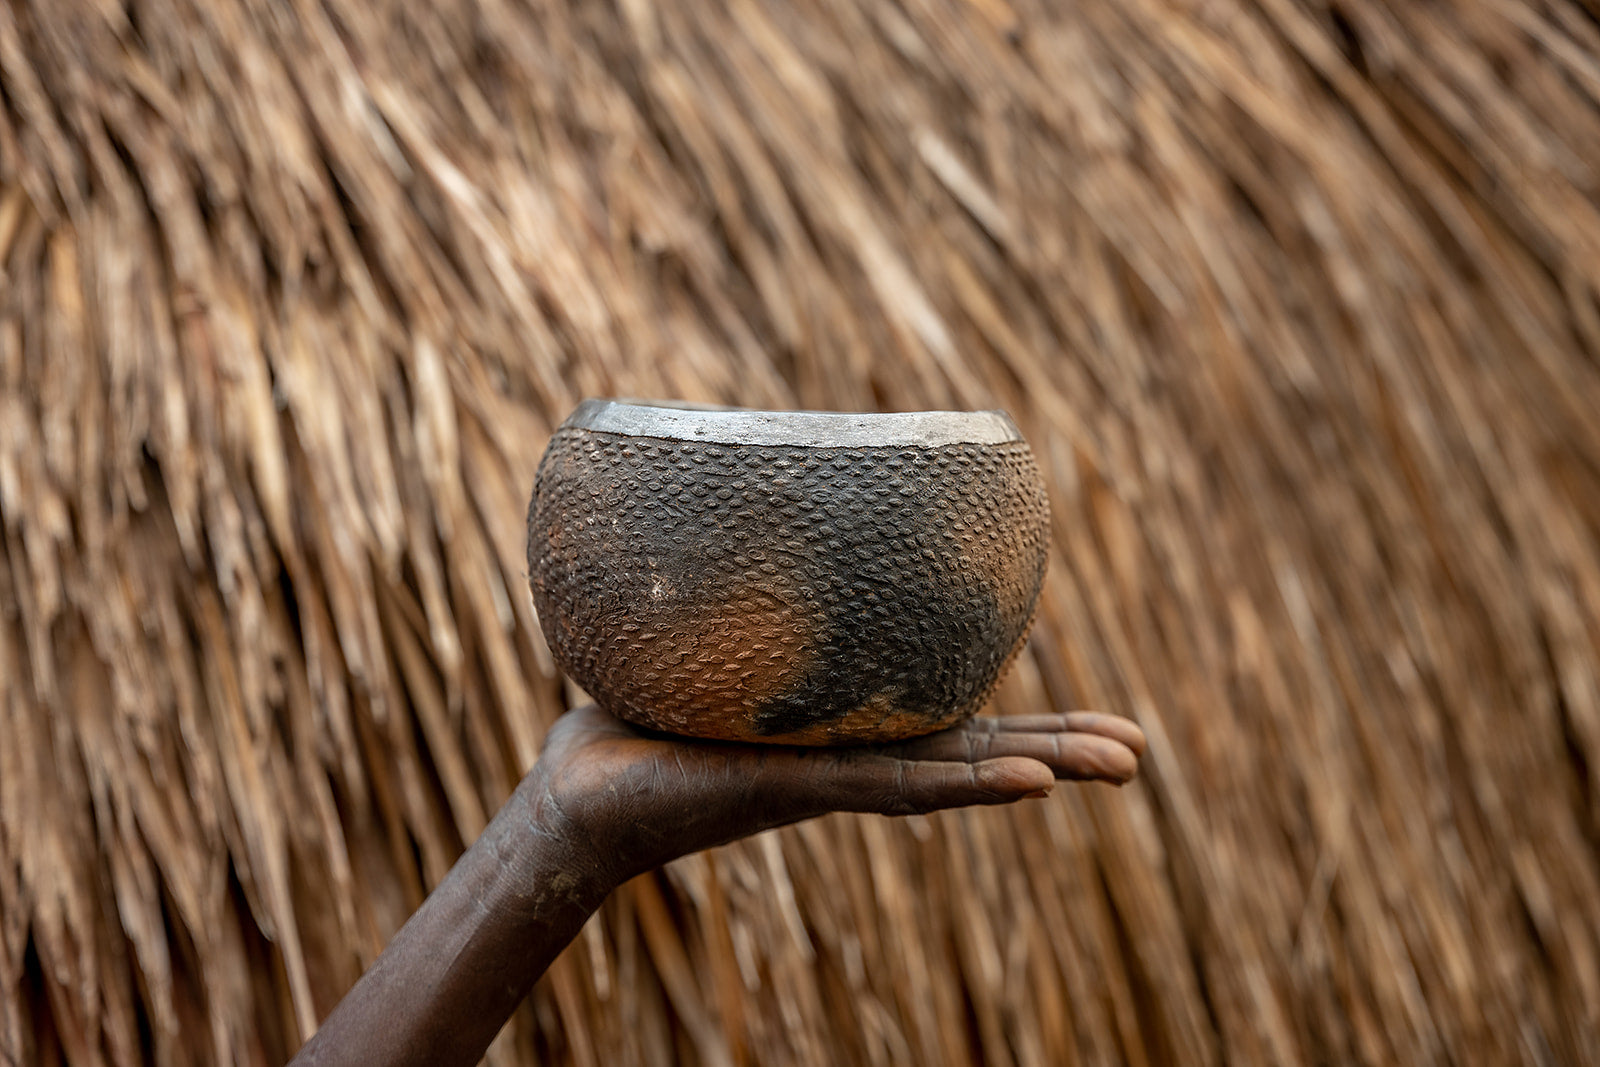 Akiliba bowl in Uganda